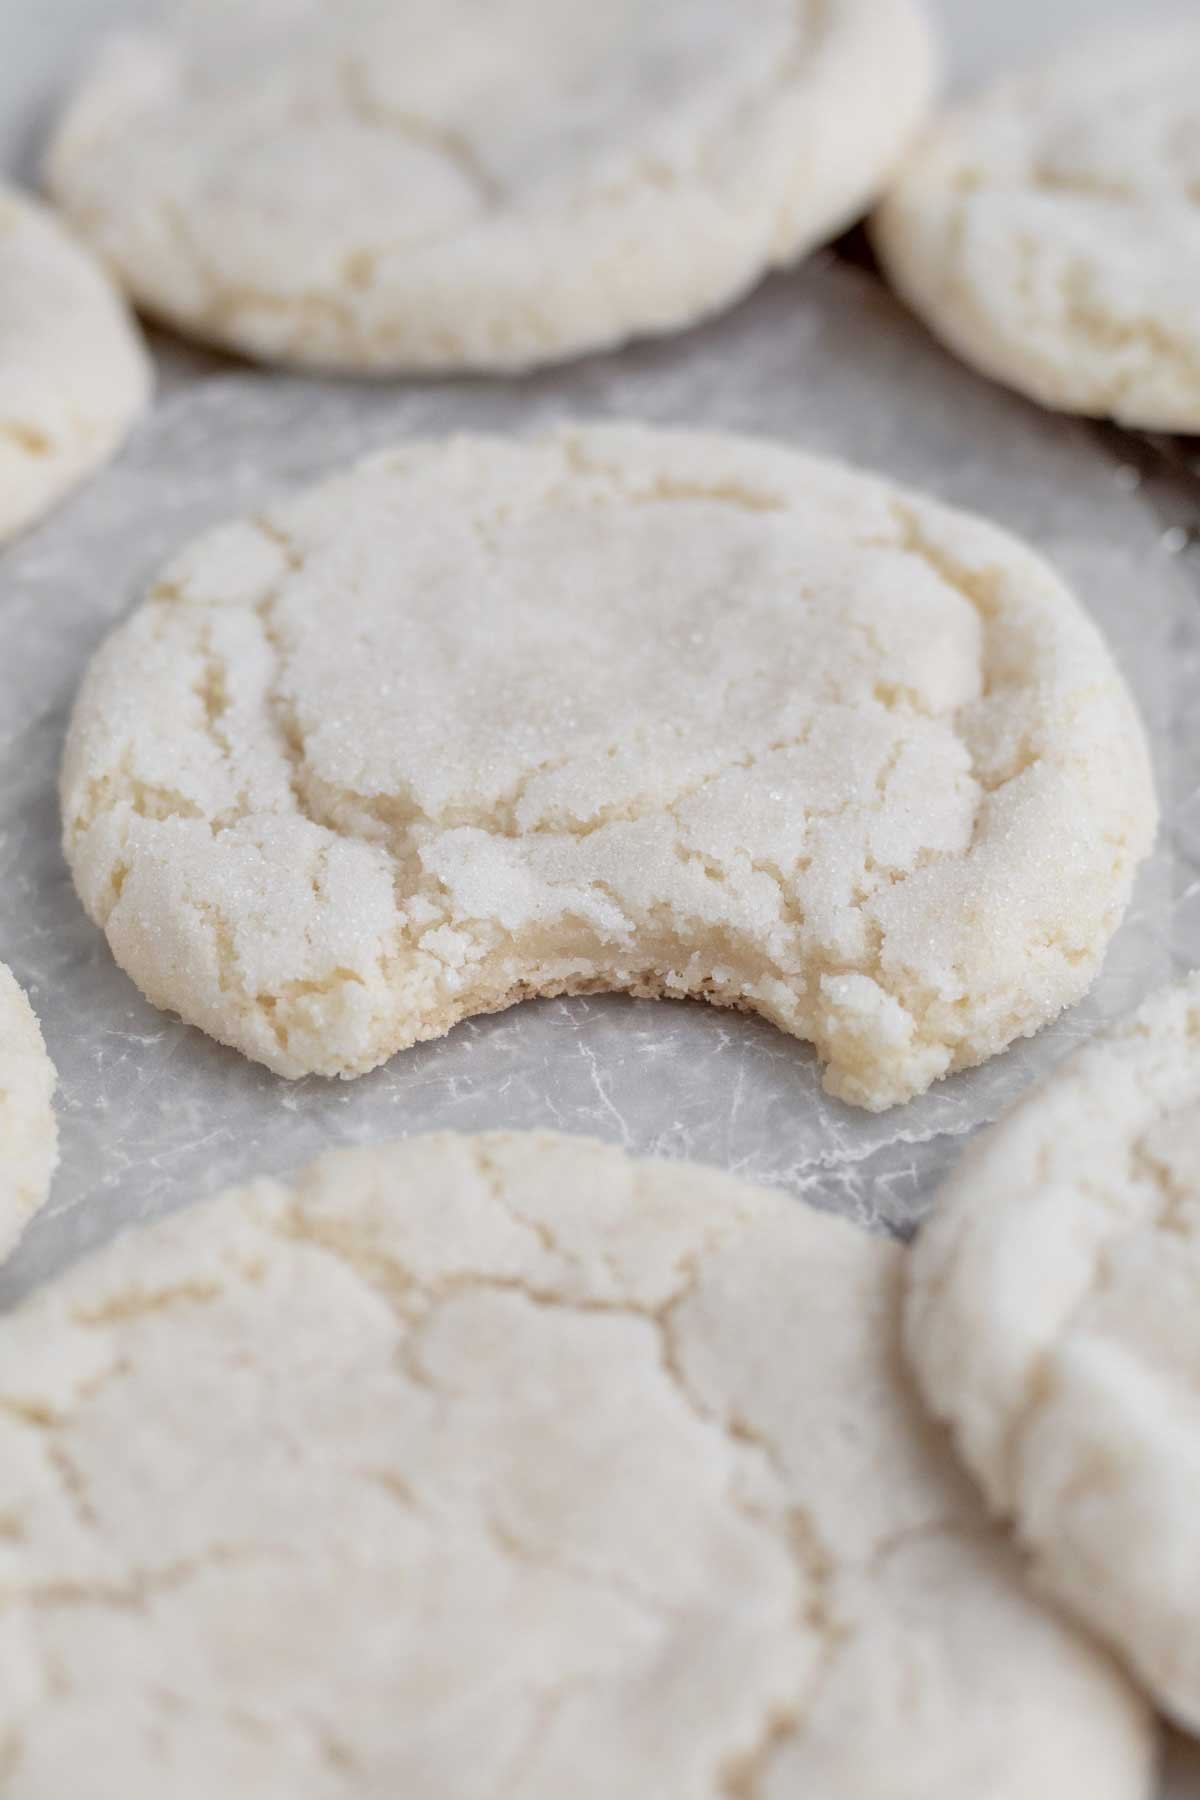 A bite through the Crispy Sugar Cookie's reveals a warm soft interior.